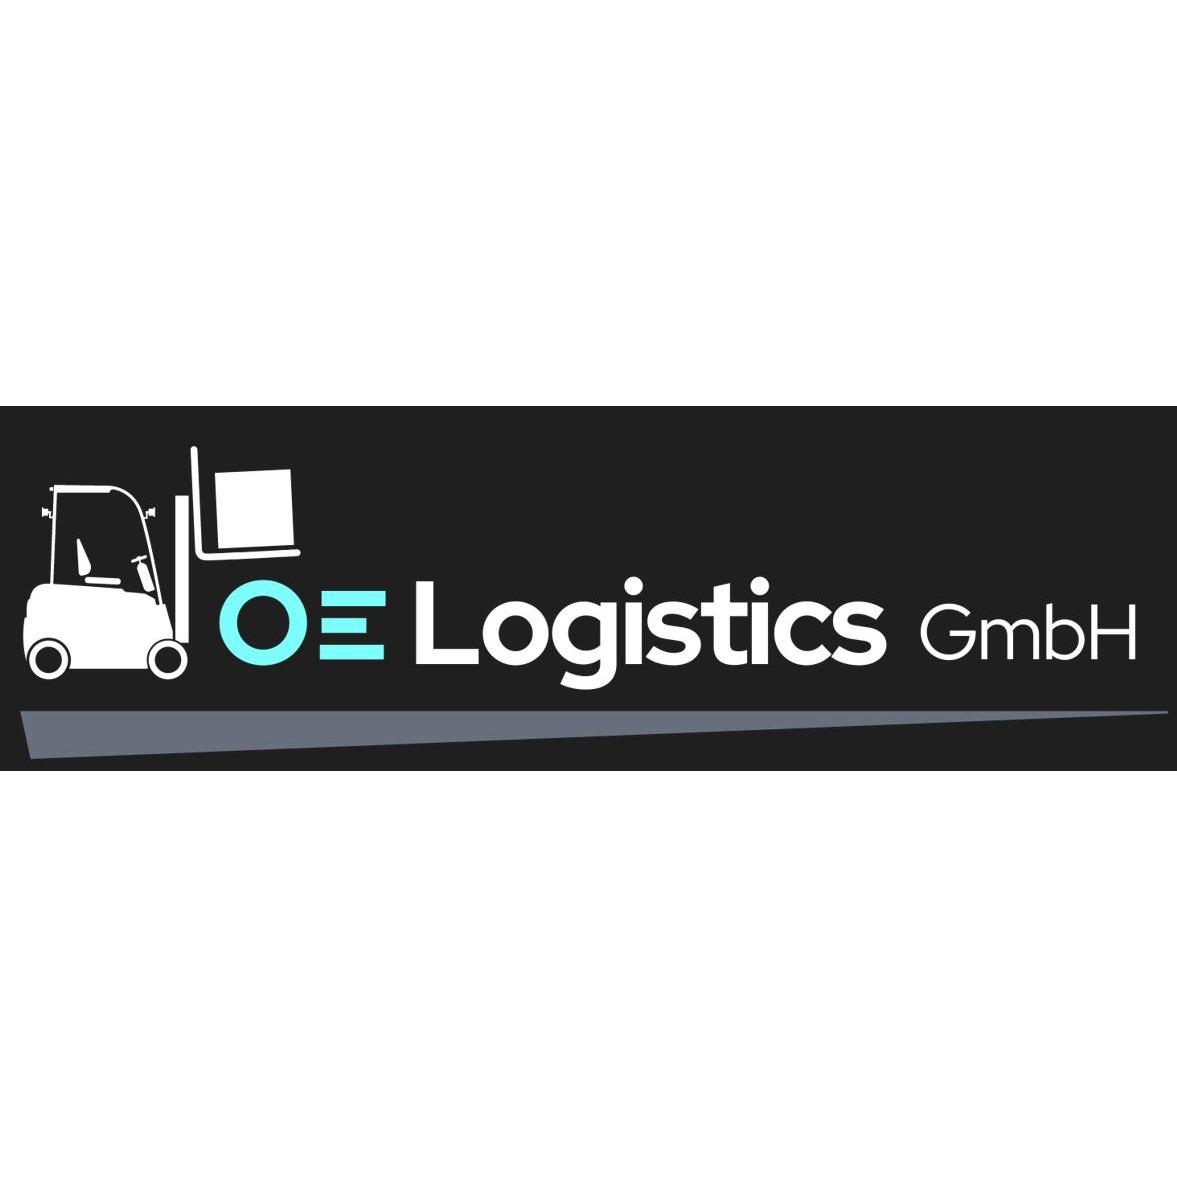 OE Logistics GmbH in Bochum - Logo